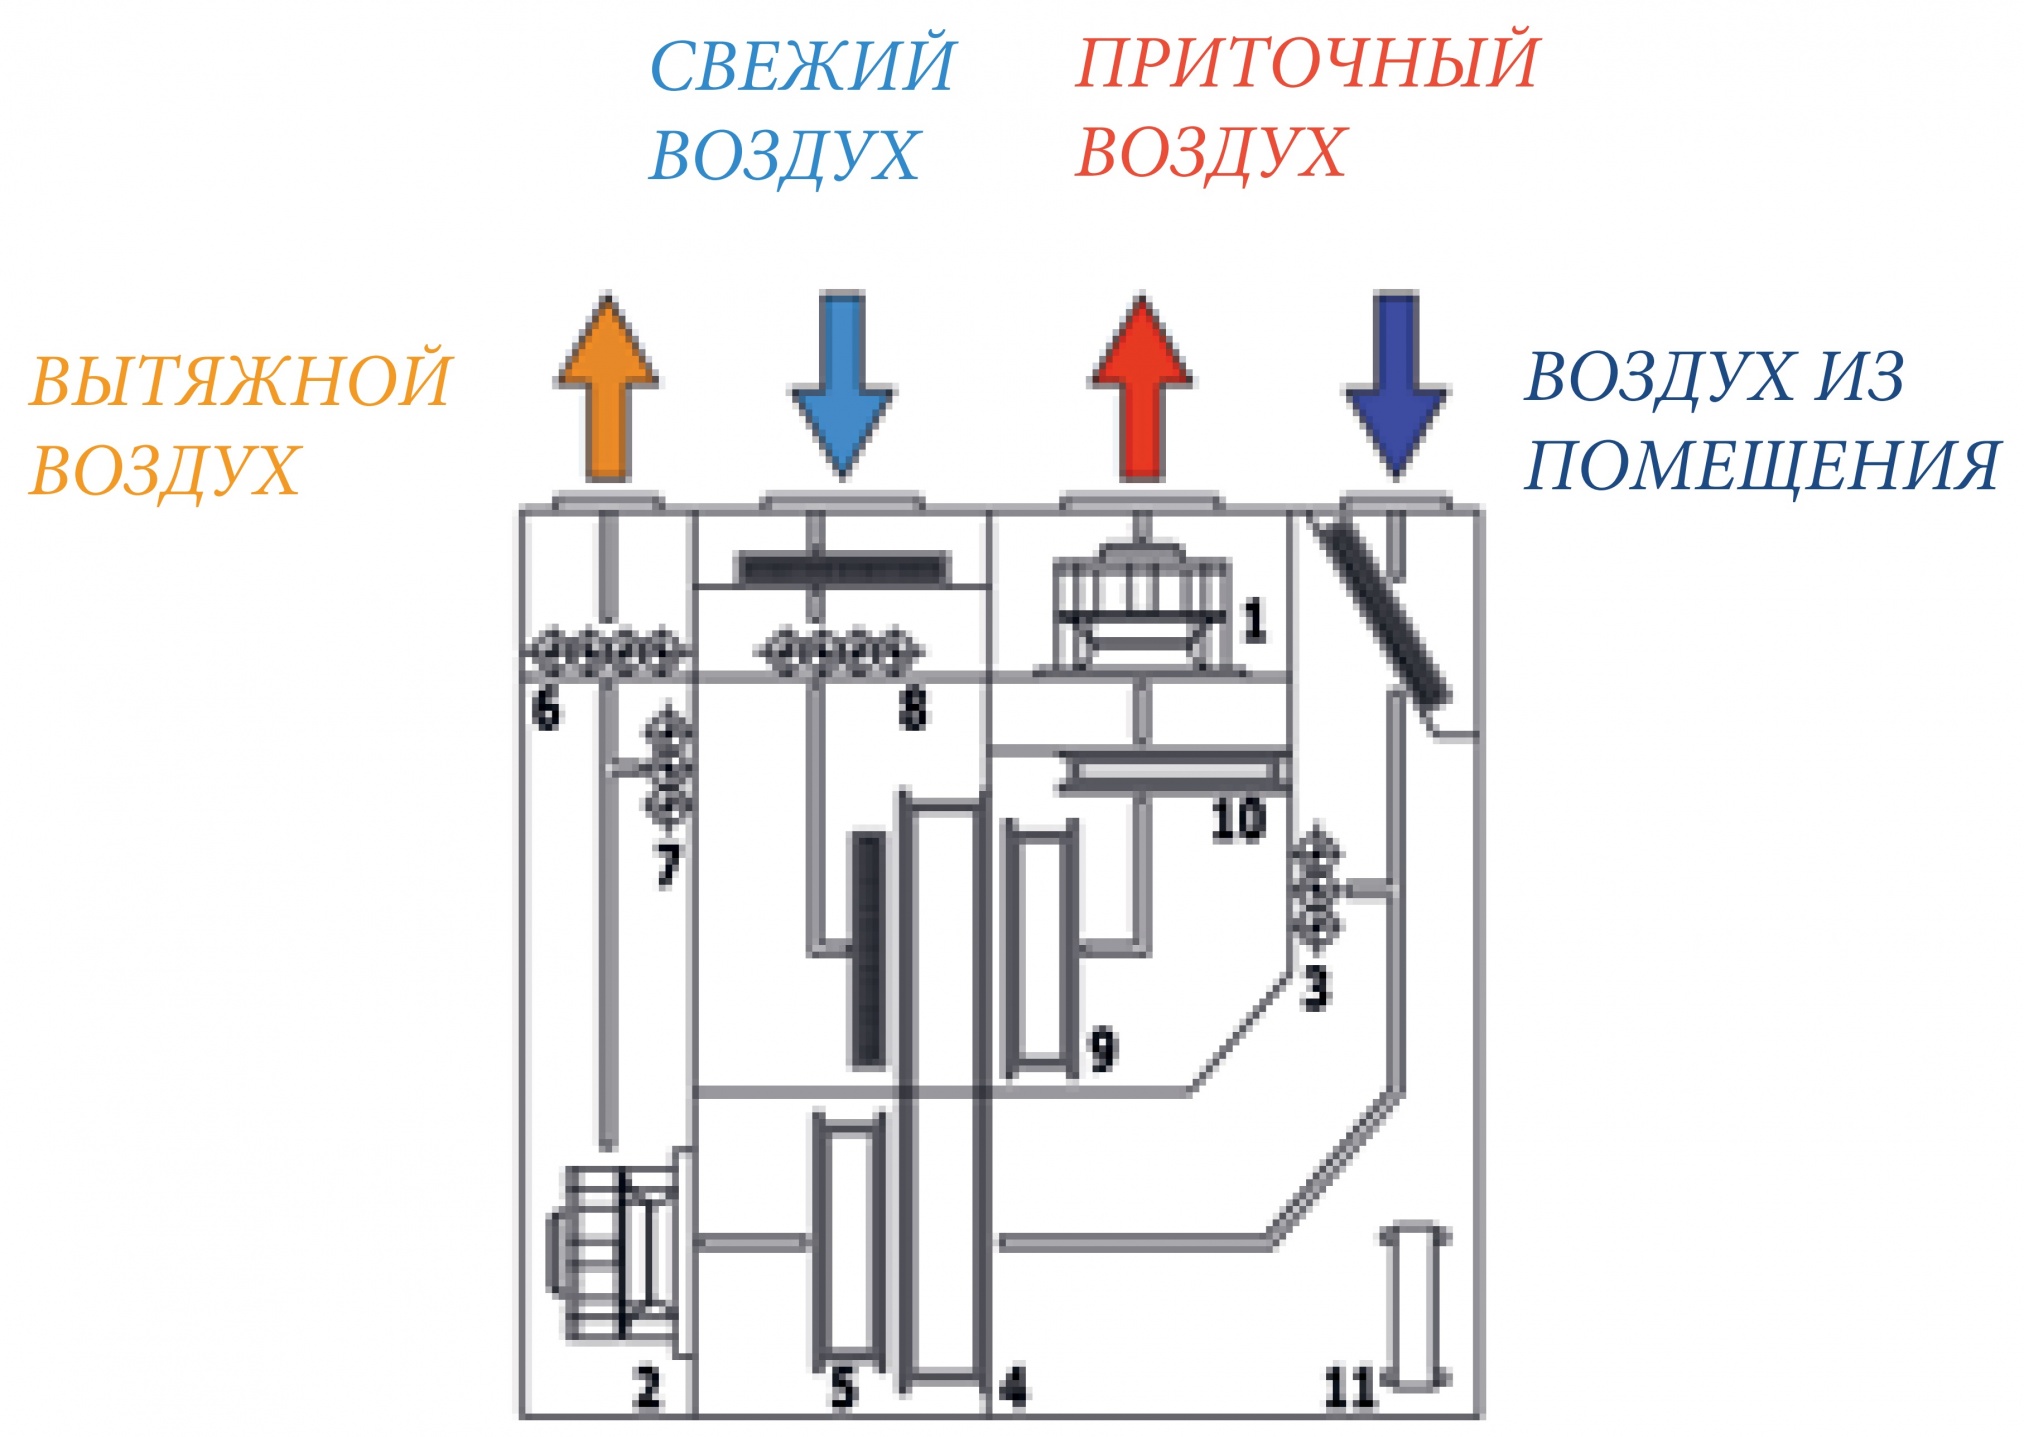 Схема работы рефрижераторной установки